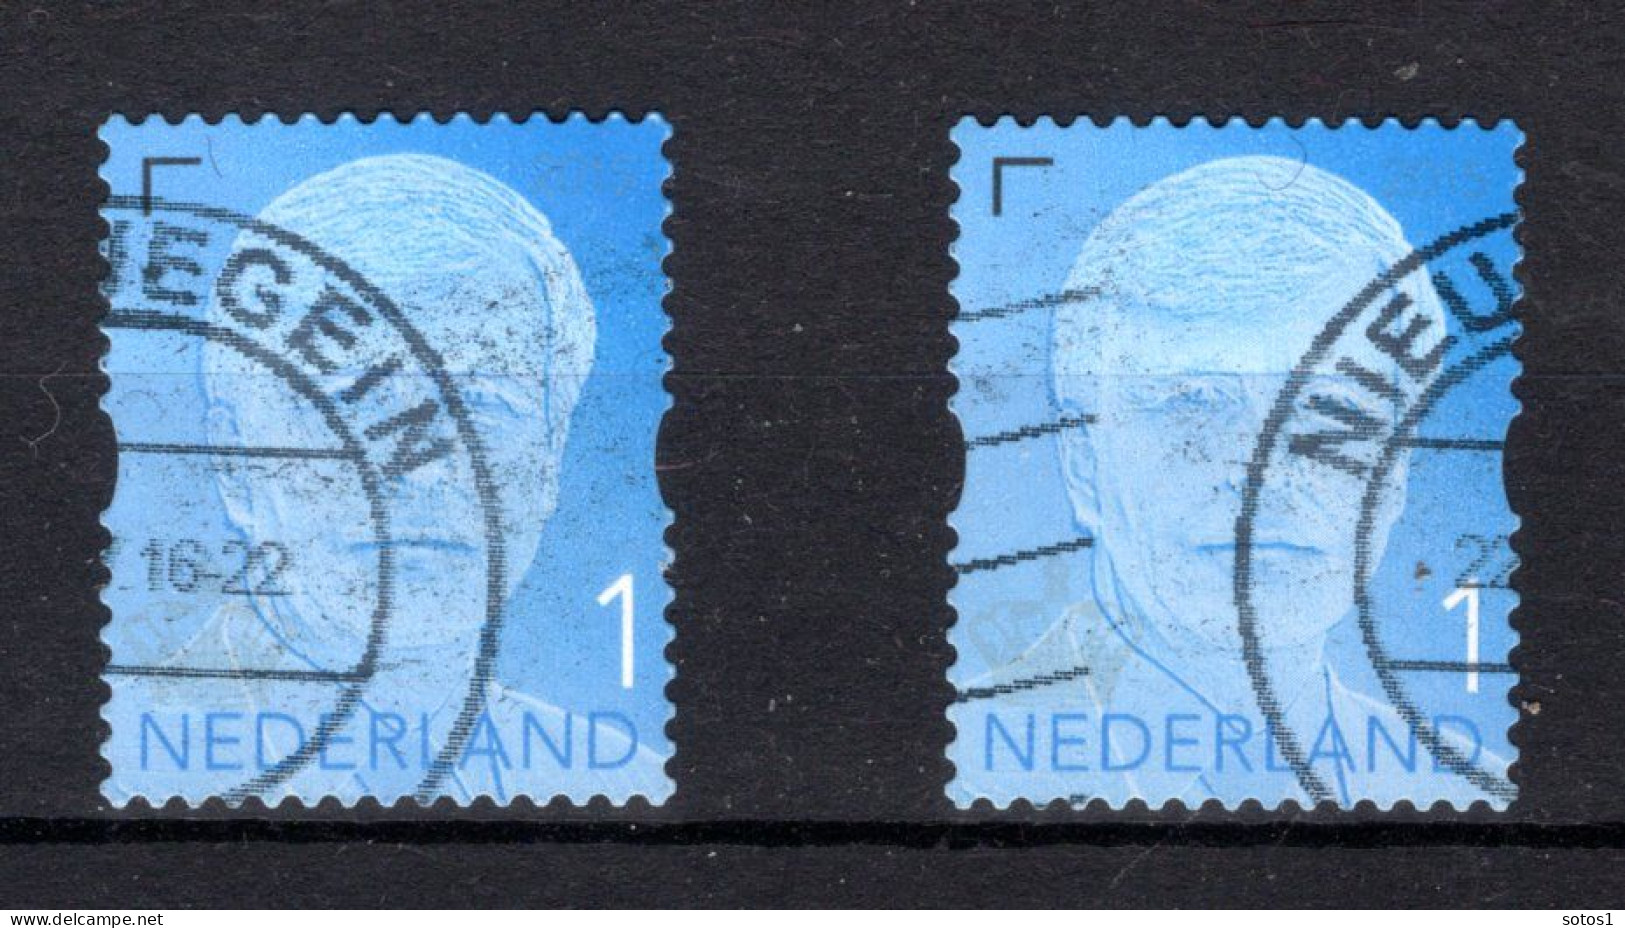 NEDERLAND 3373° Gestempeld 2015 - Koning Willem-Alexander - Used Stamps